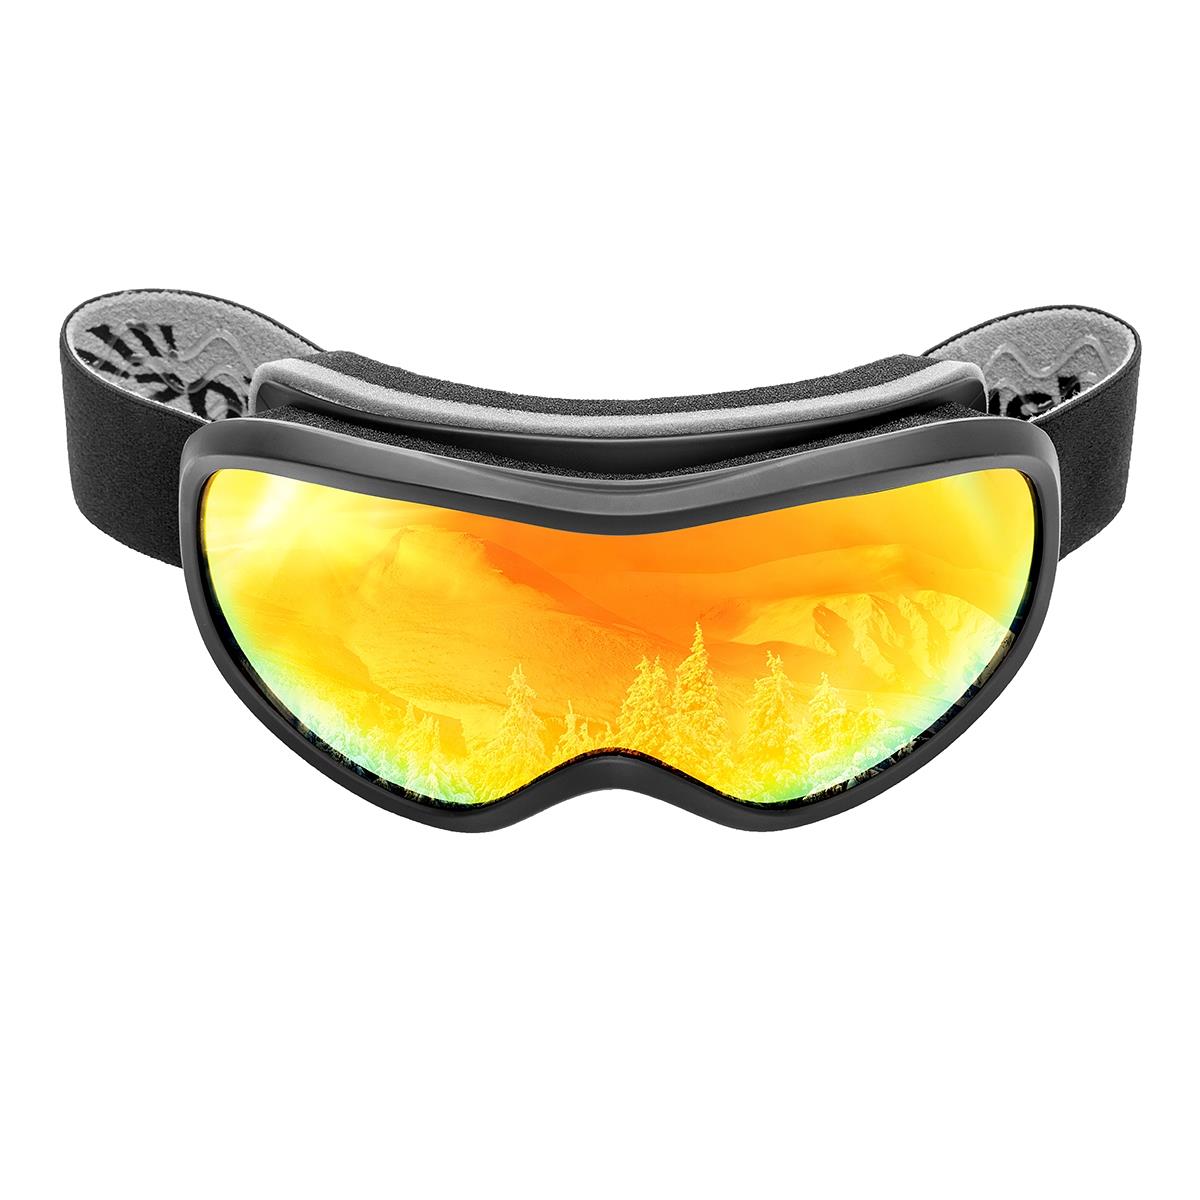 Очки горнолыжные HS-HX-043 Helios очки виртуальной реальности google из картона для смартфонов